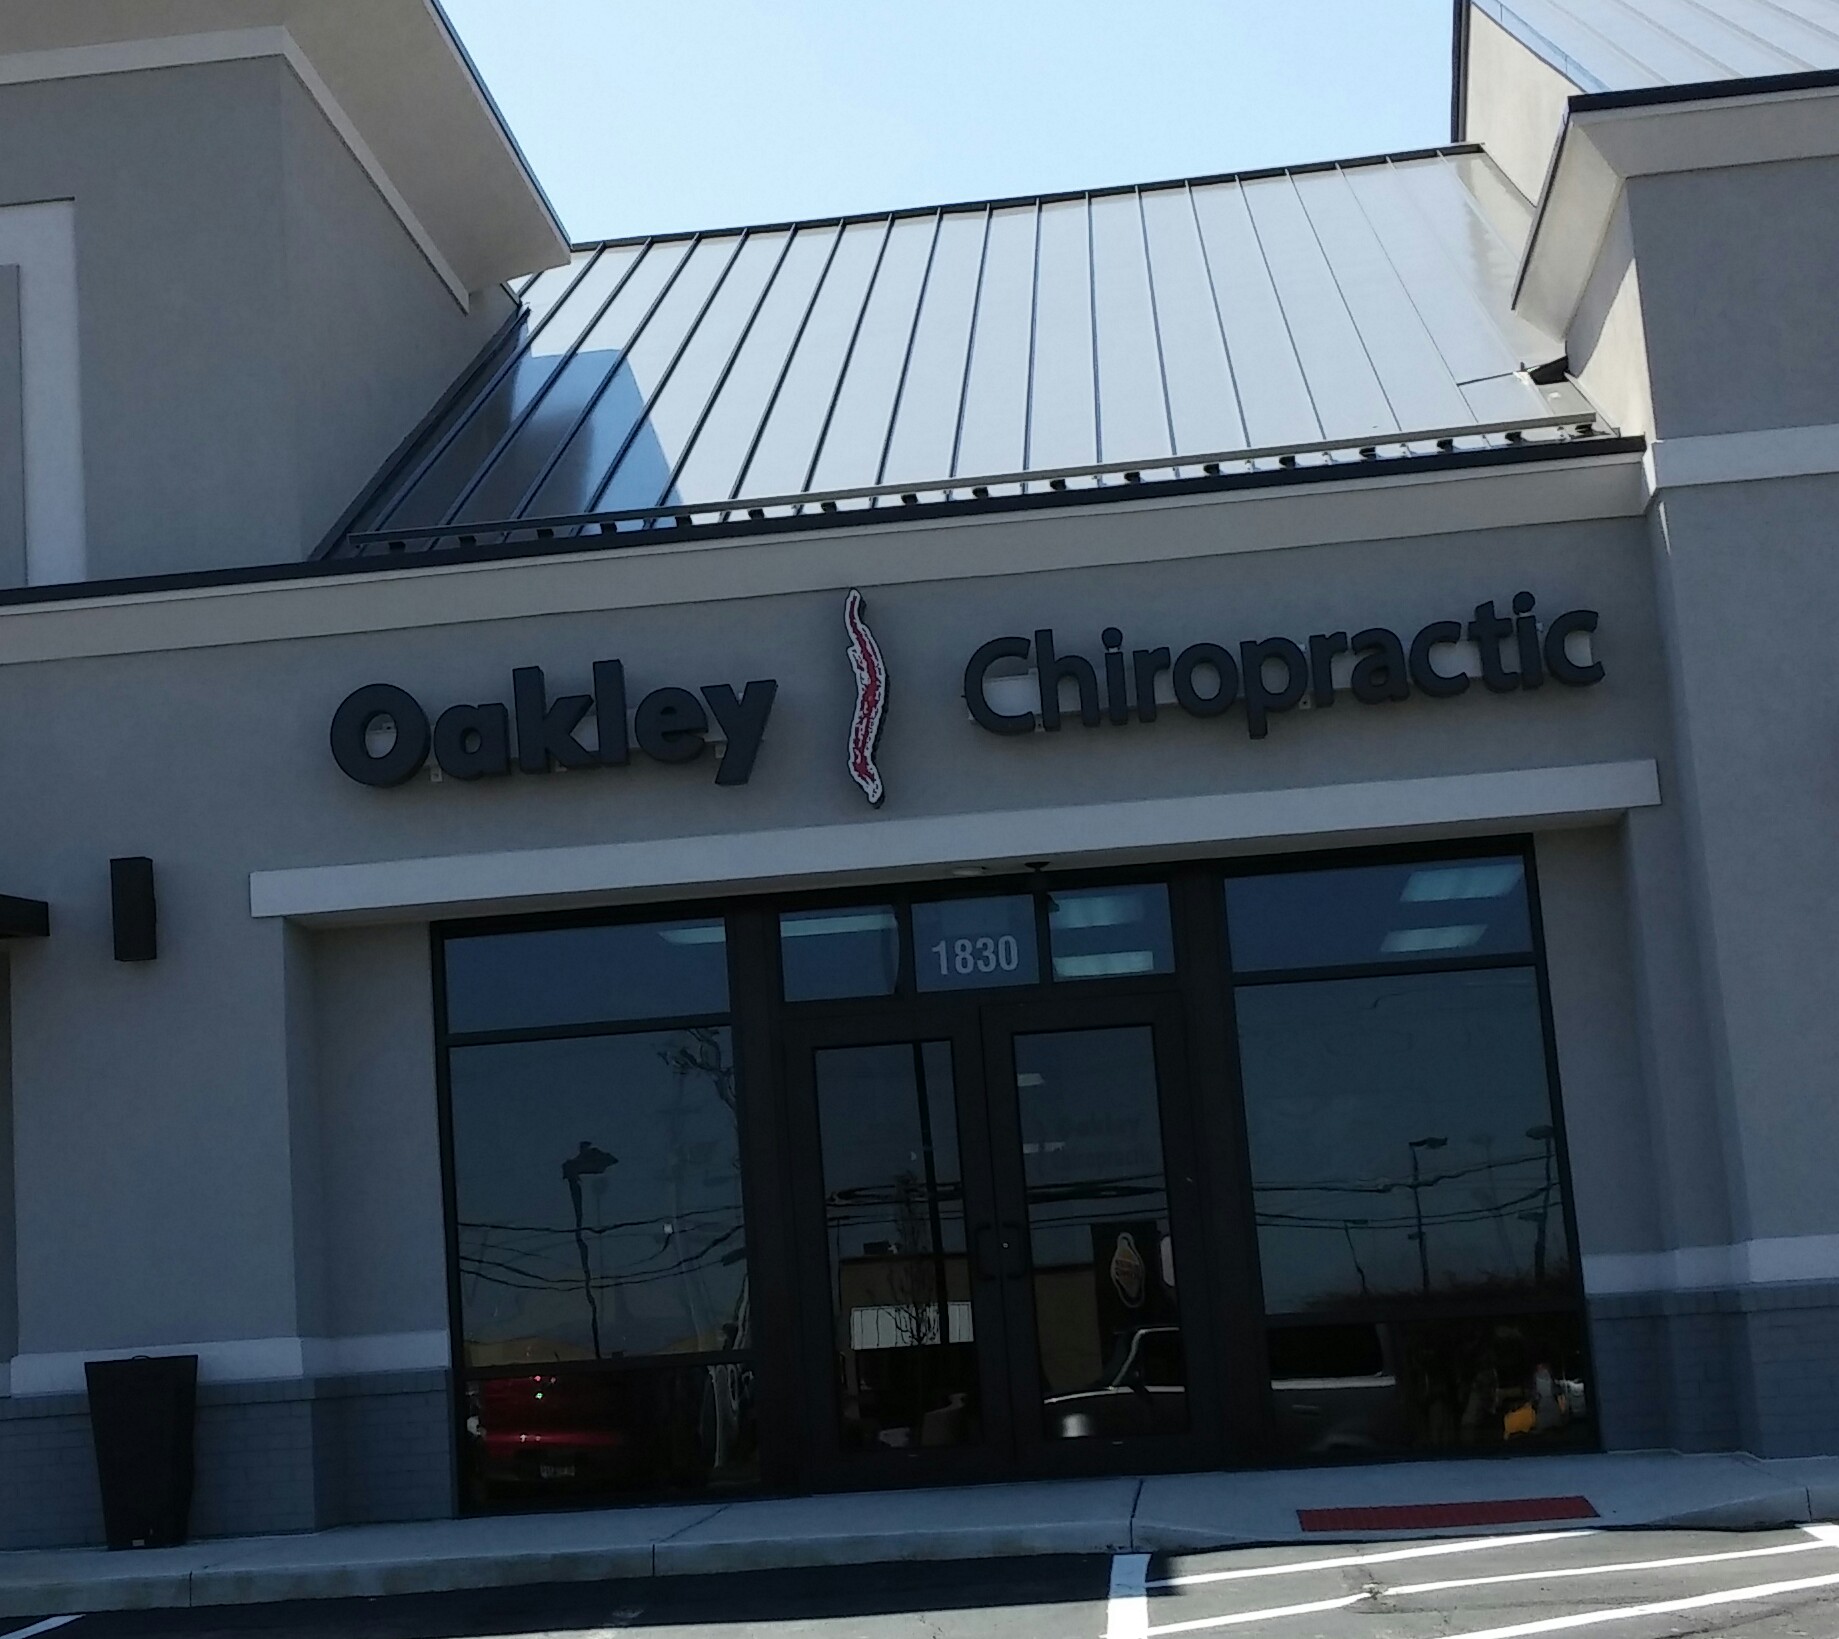 Oakley Chiropractic